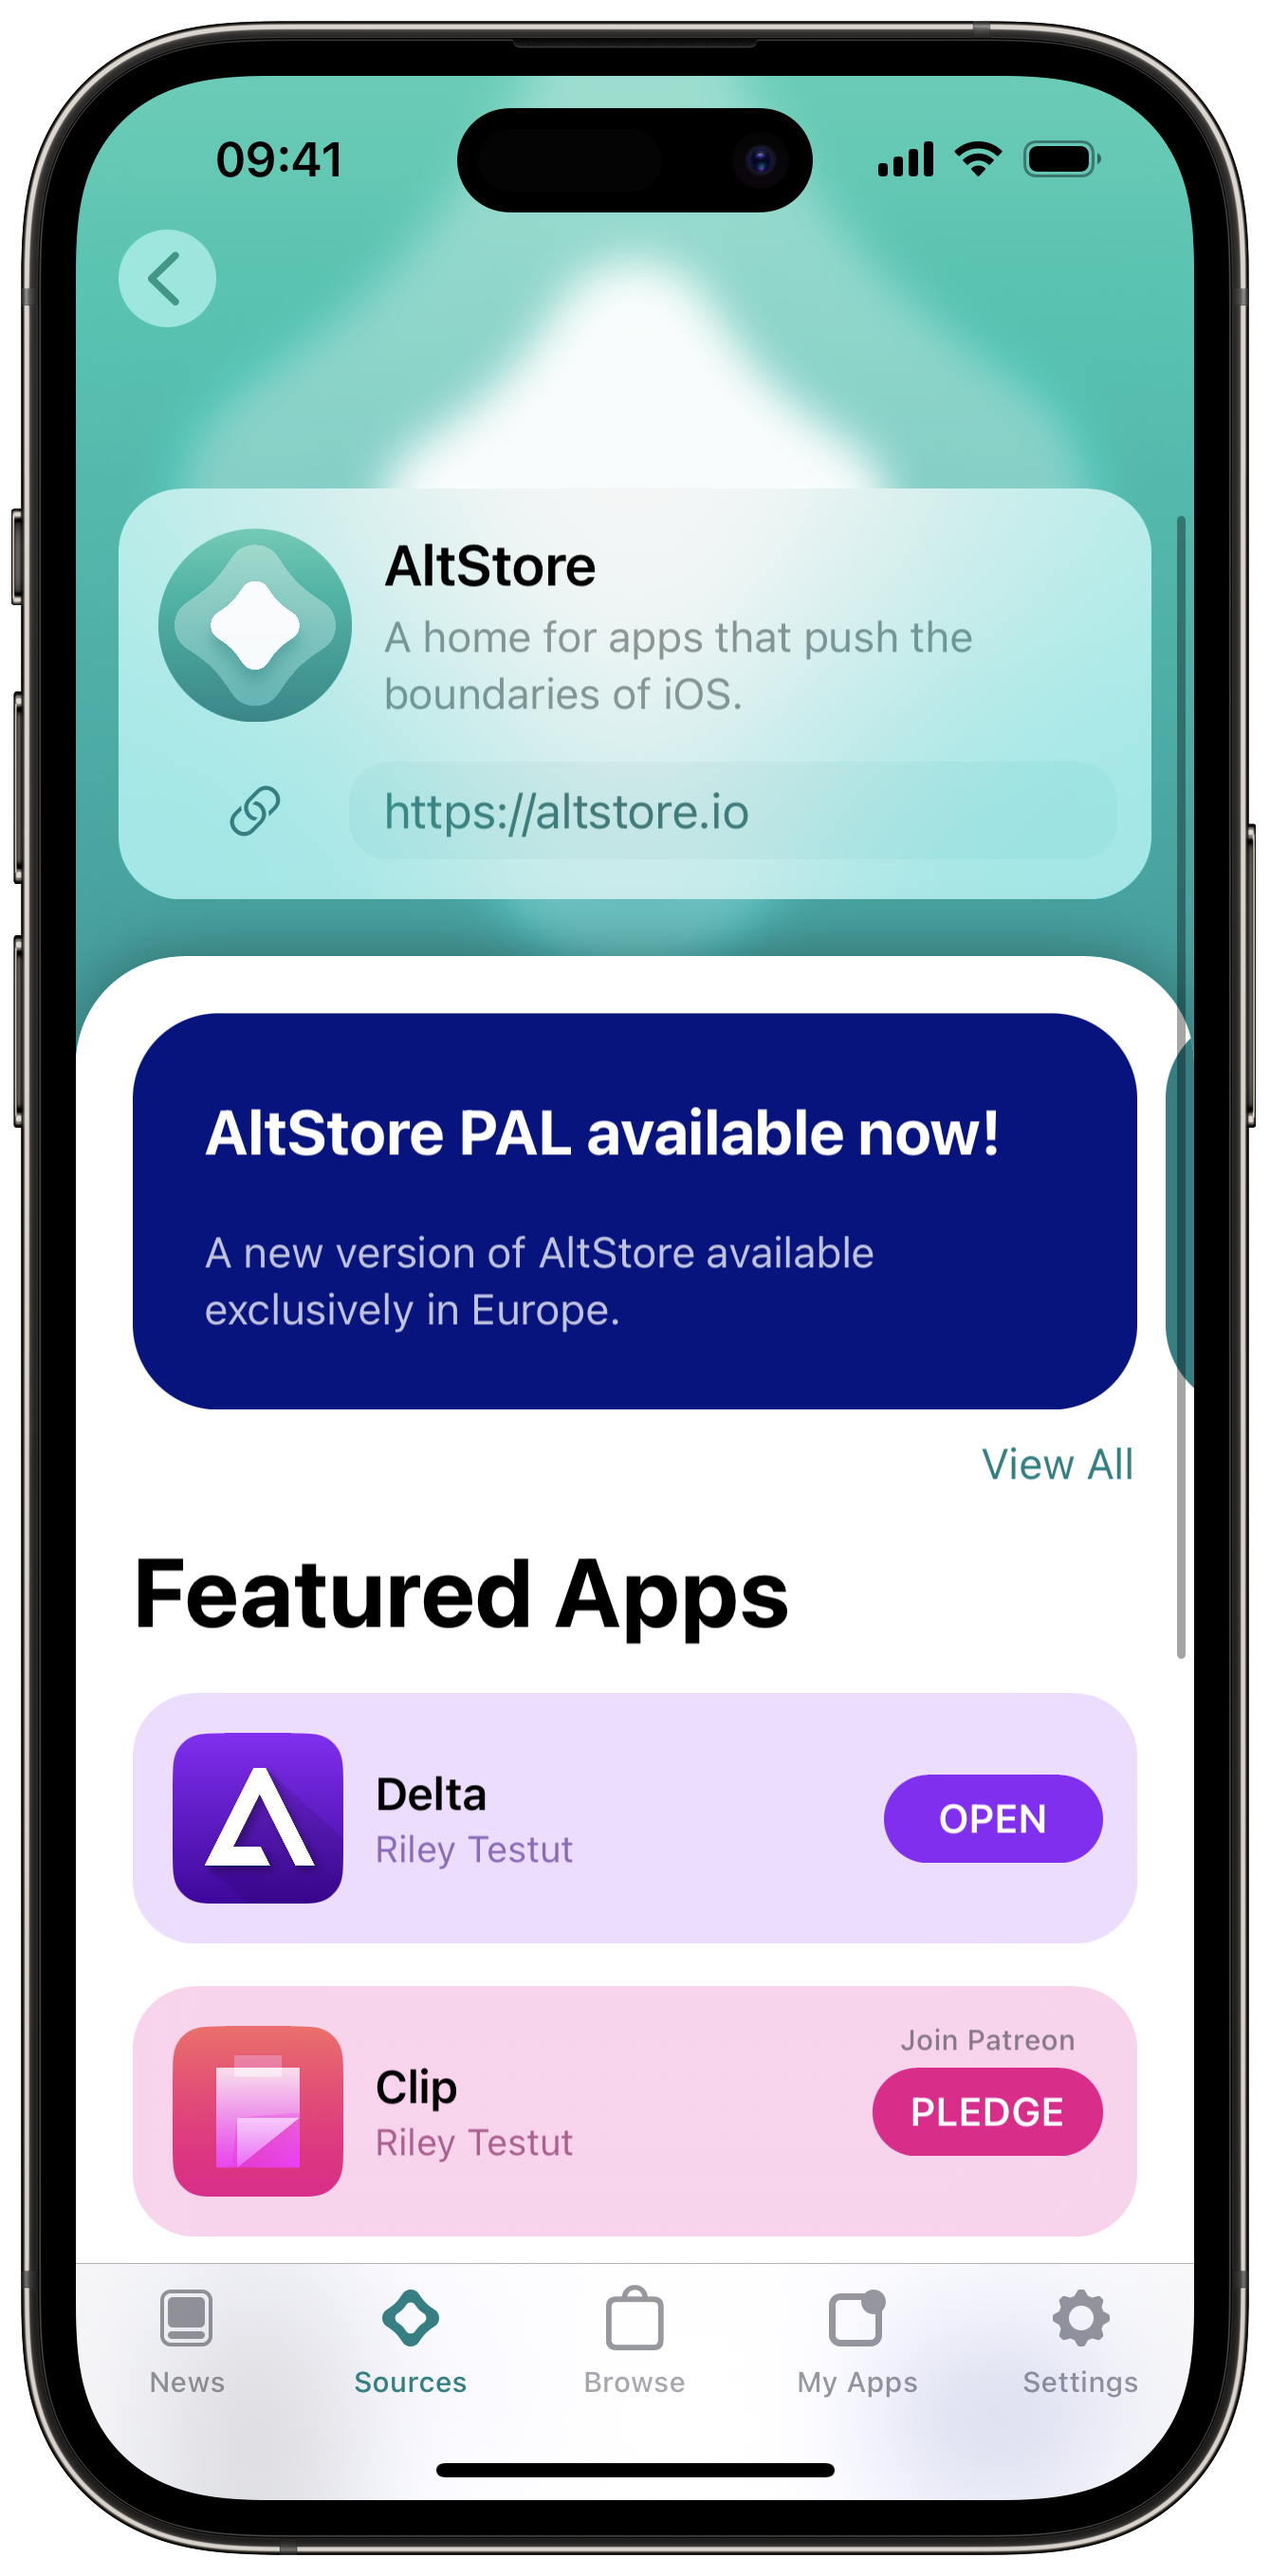 AB'deki iPhone kullanıcıları ilk üçüncü taraf uygulama mağazası olan AltStore PAL'a sahip oluyor